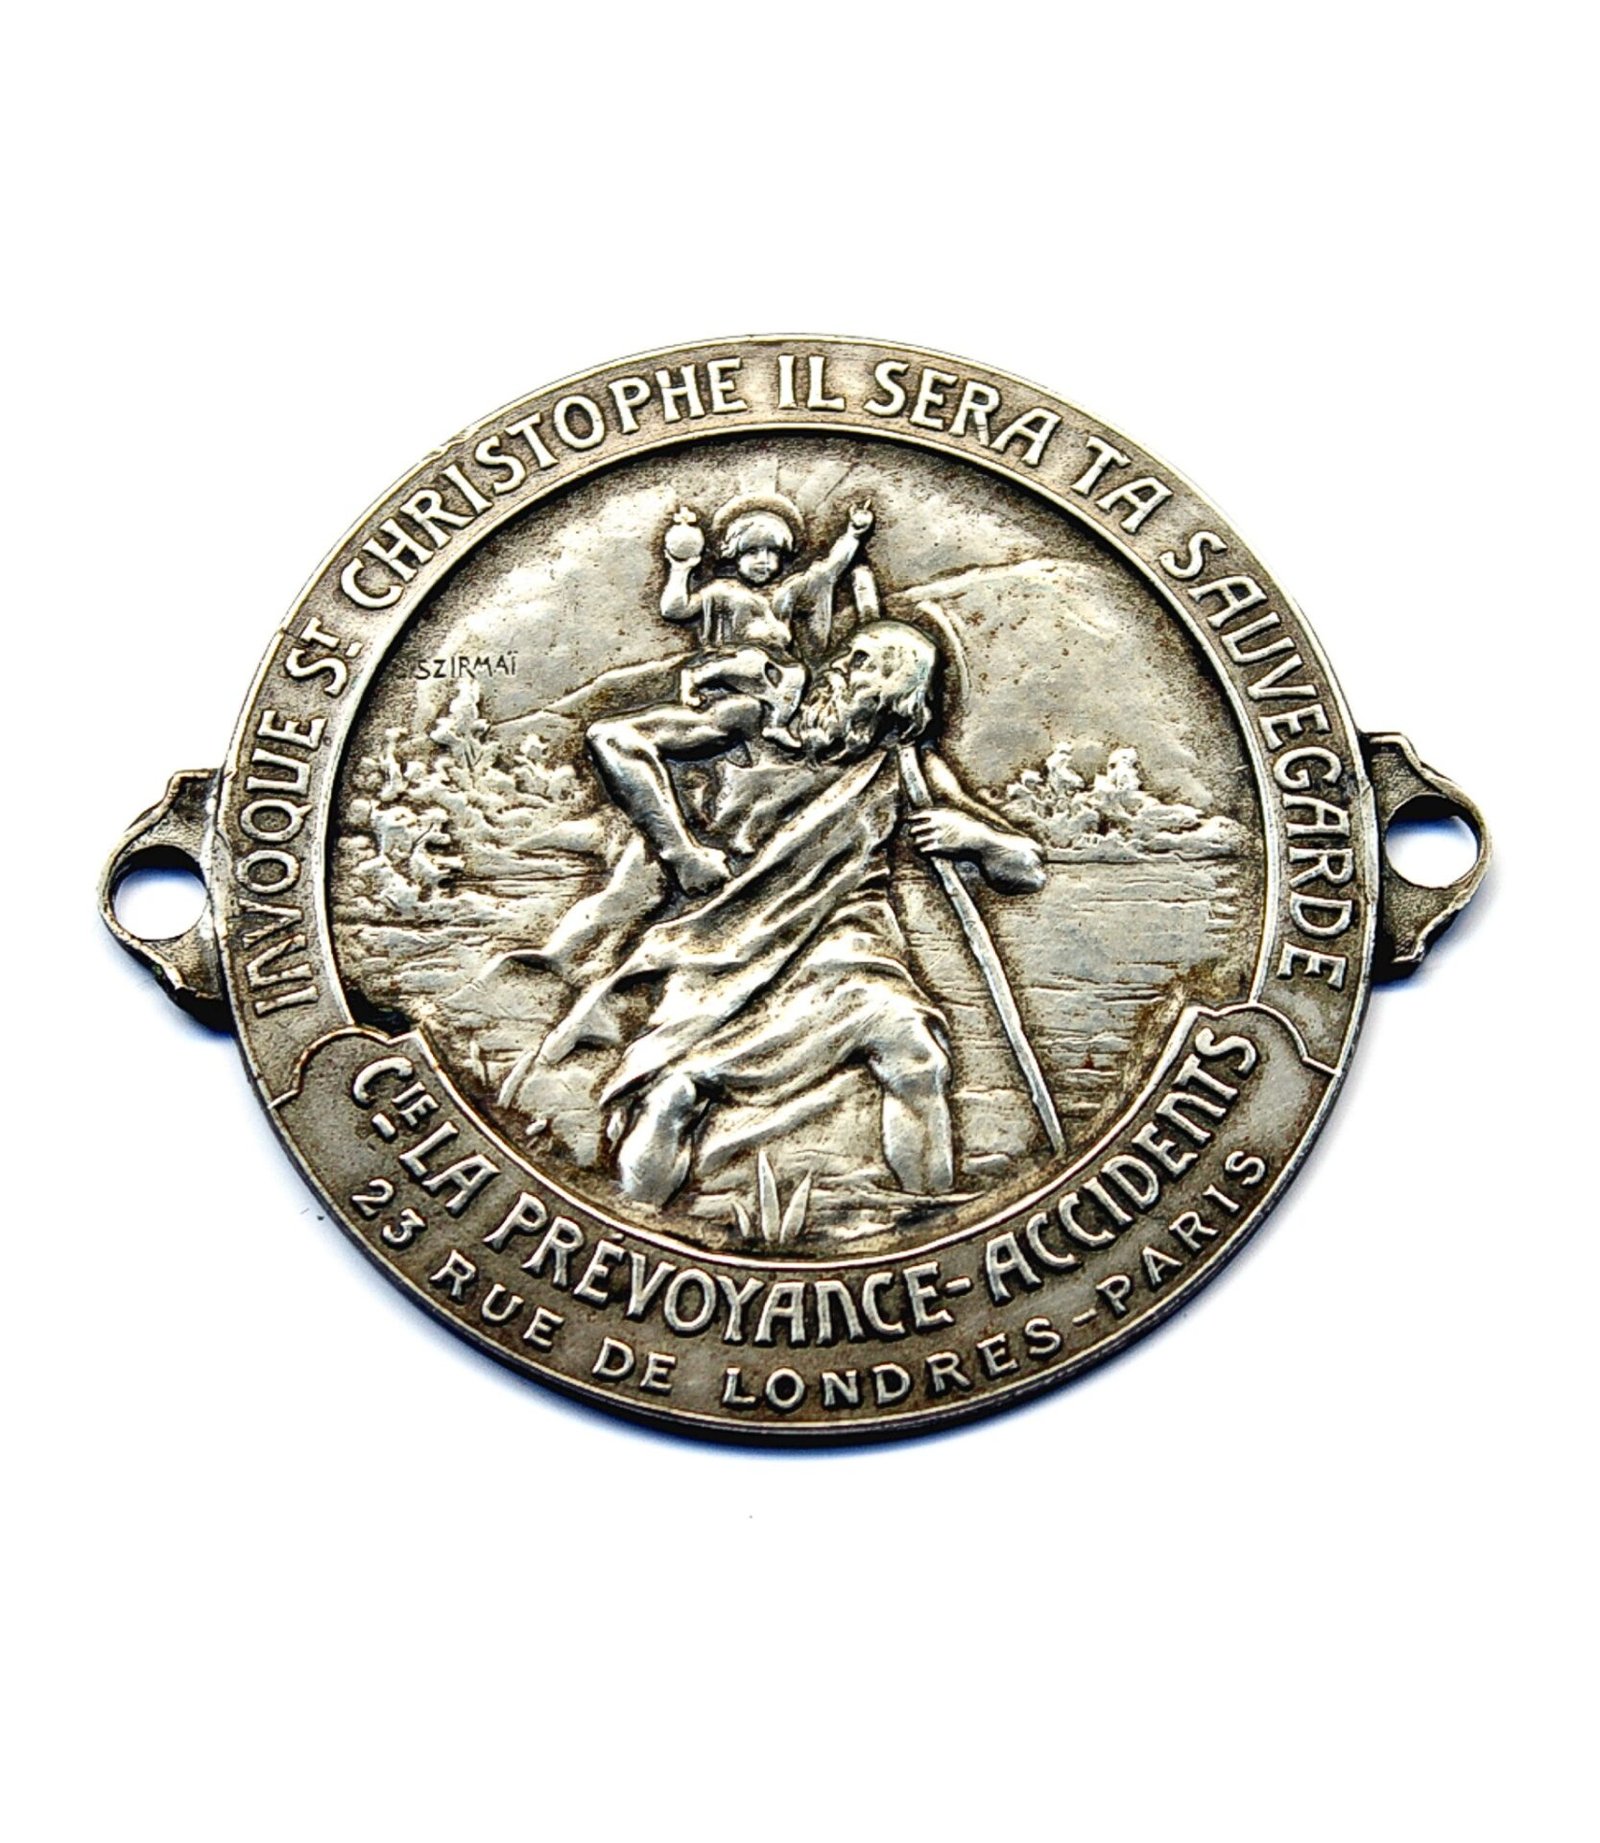 St. Christopher badge by Tony Szirmai